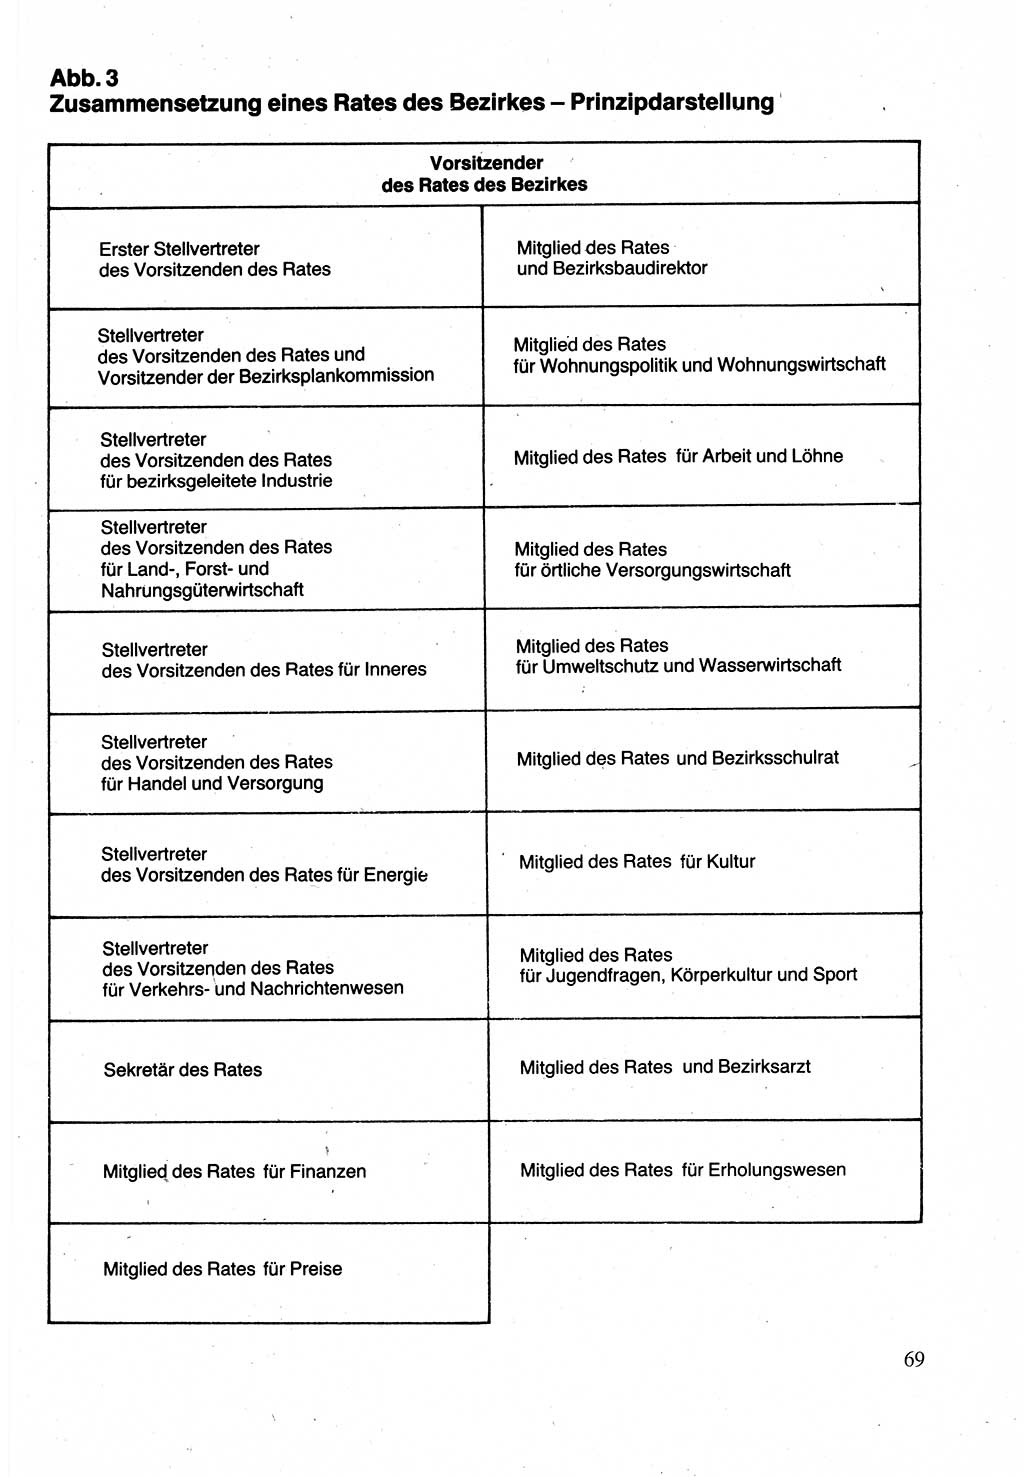 Verwaltungsrecht [Deutsche Demokratische Republik (DDR)], Lehrbuch 1988, Seite 69 (Verw.-R. DDR Lb. 1988, S. 69)